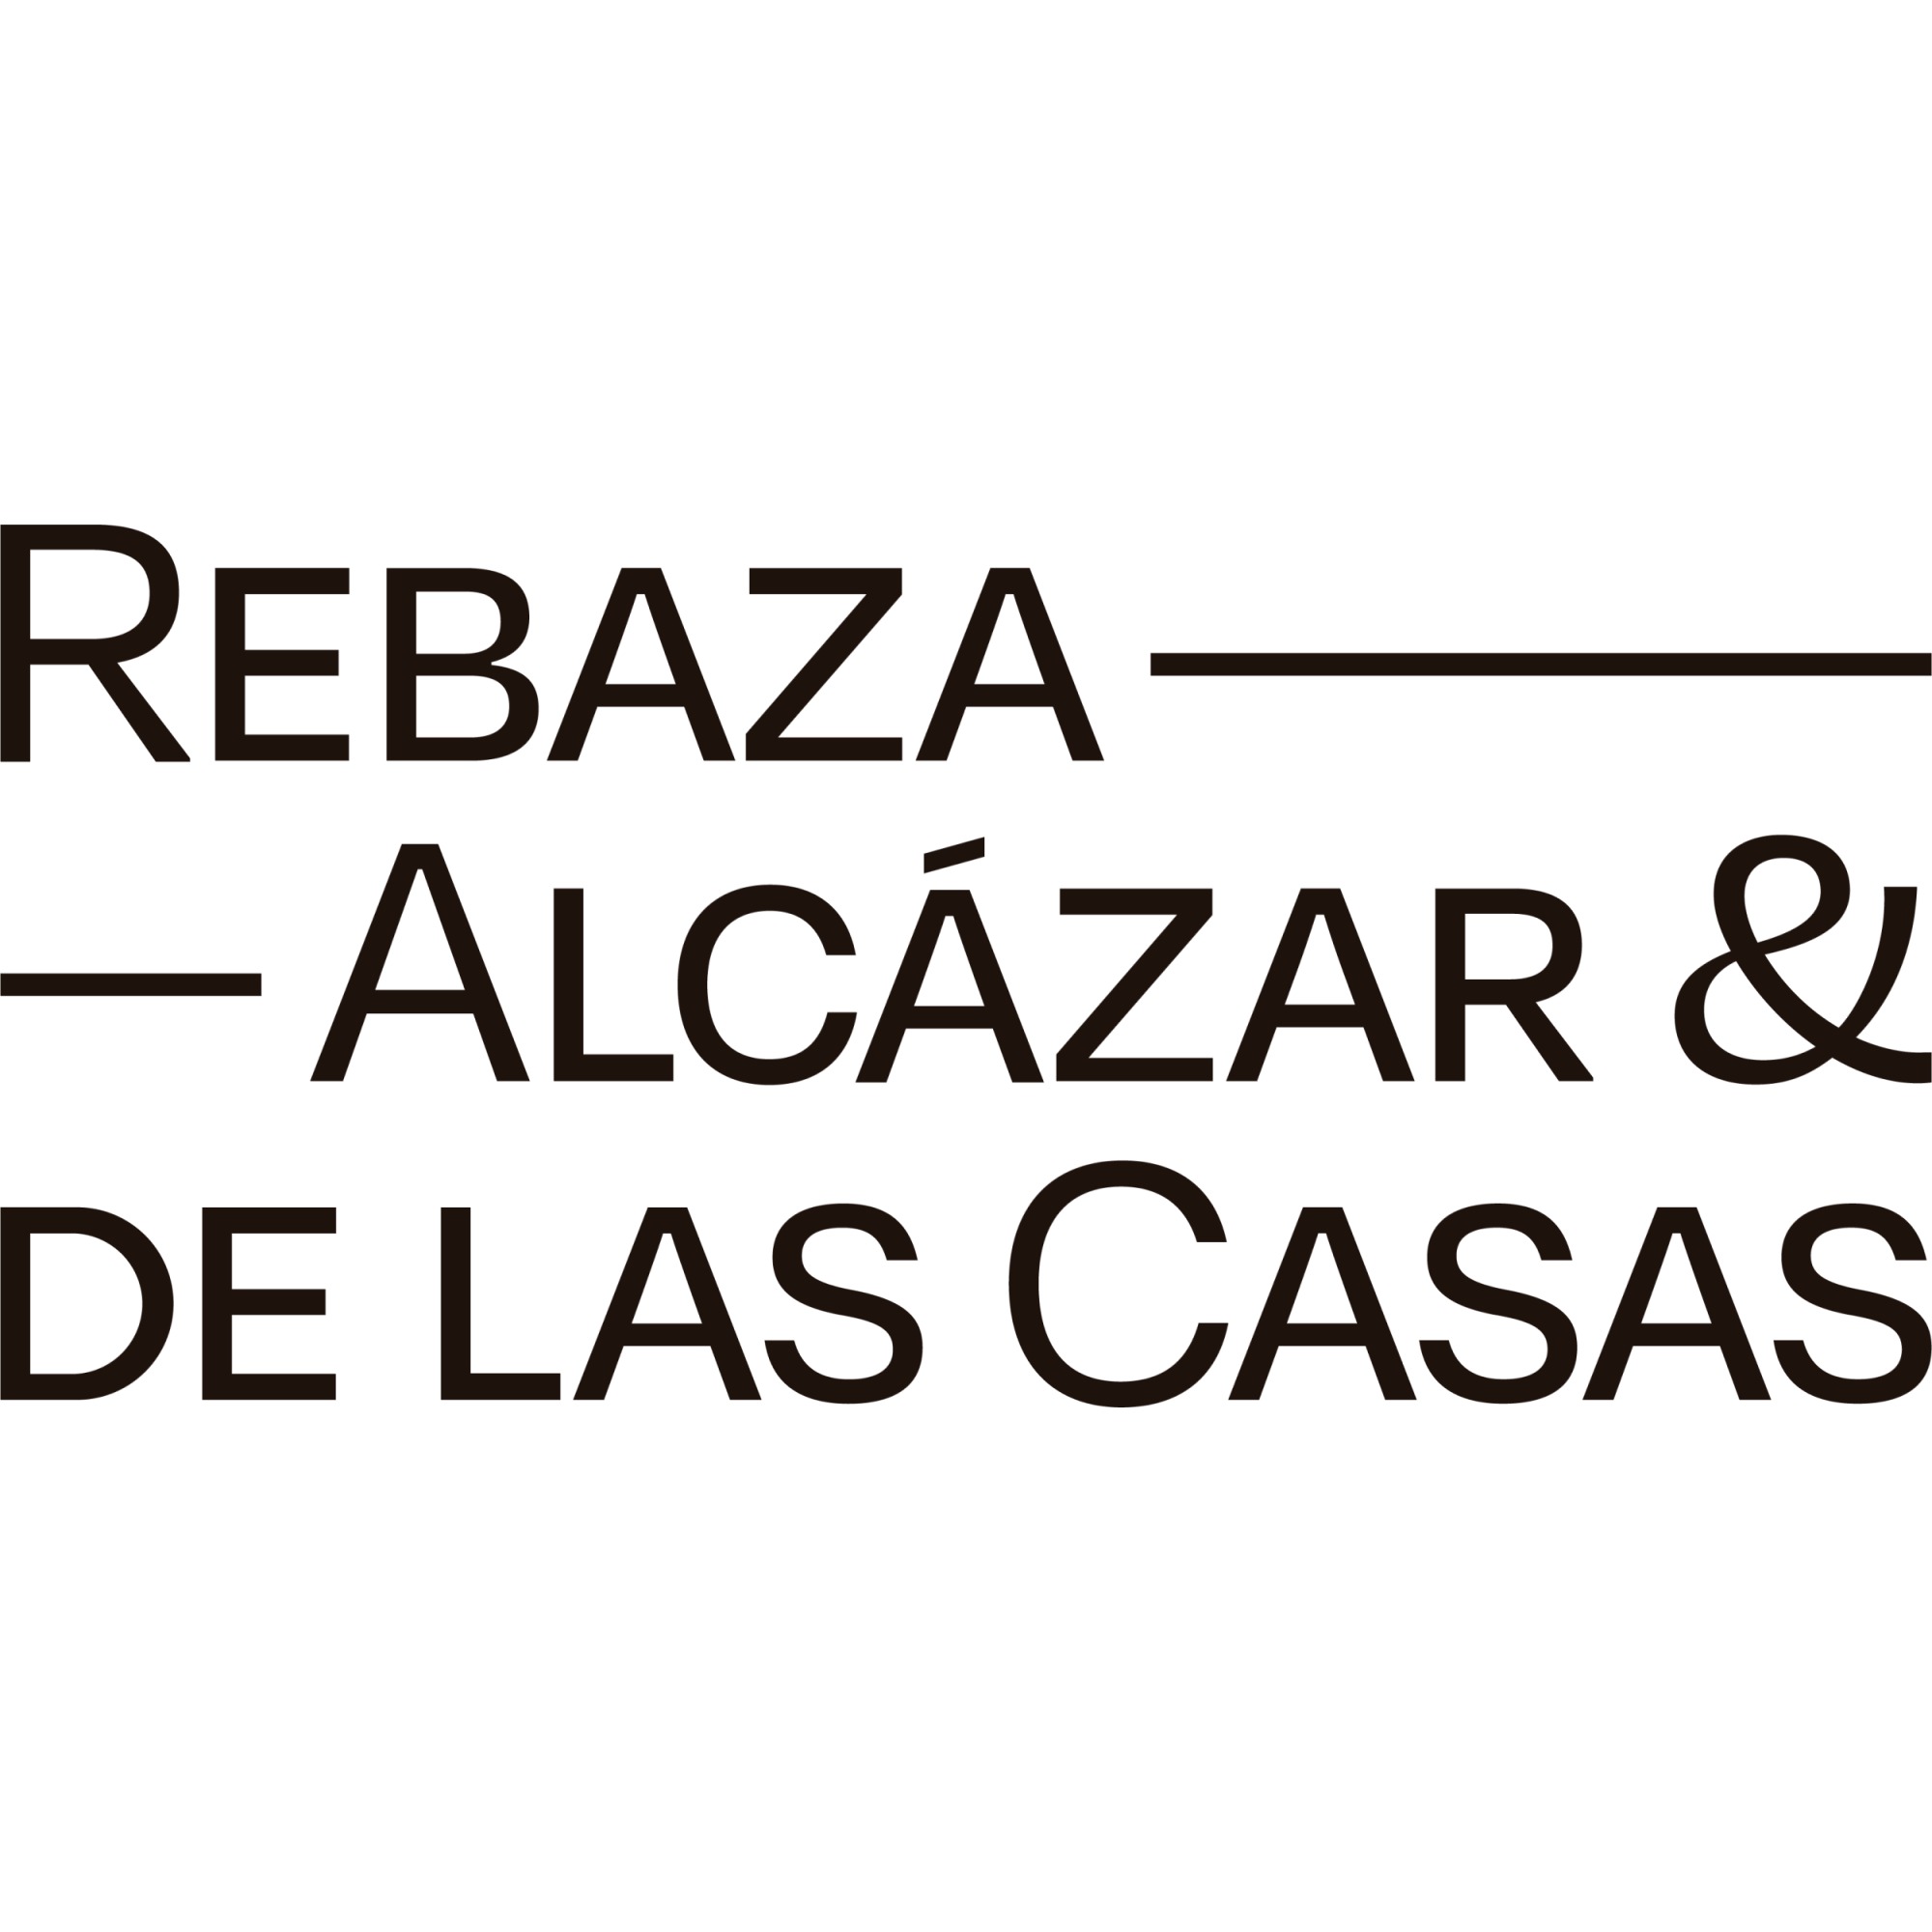 the Rebaza, Alcázar & De Las Casas logo.